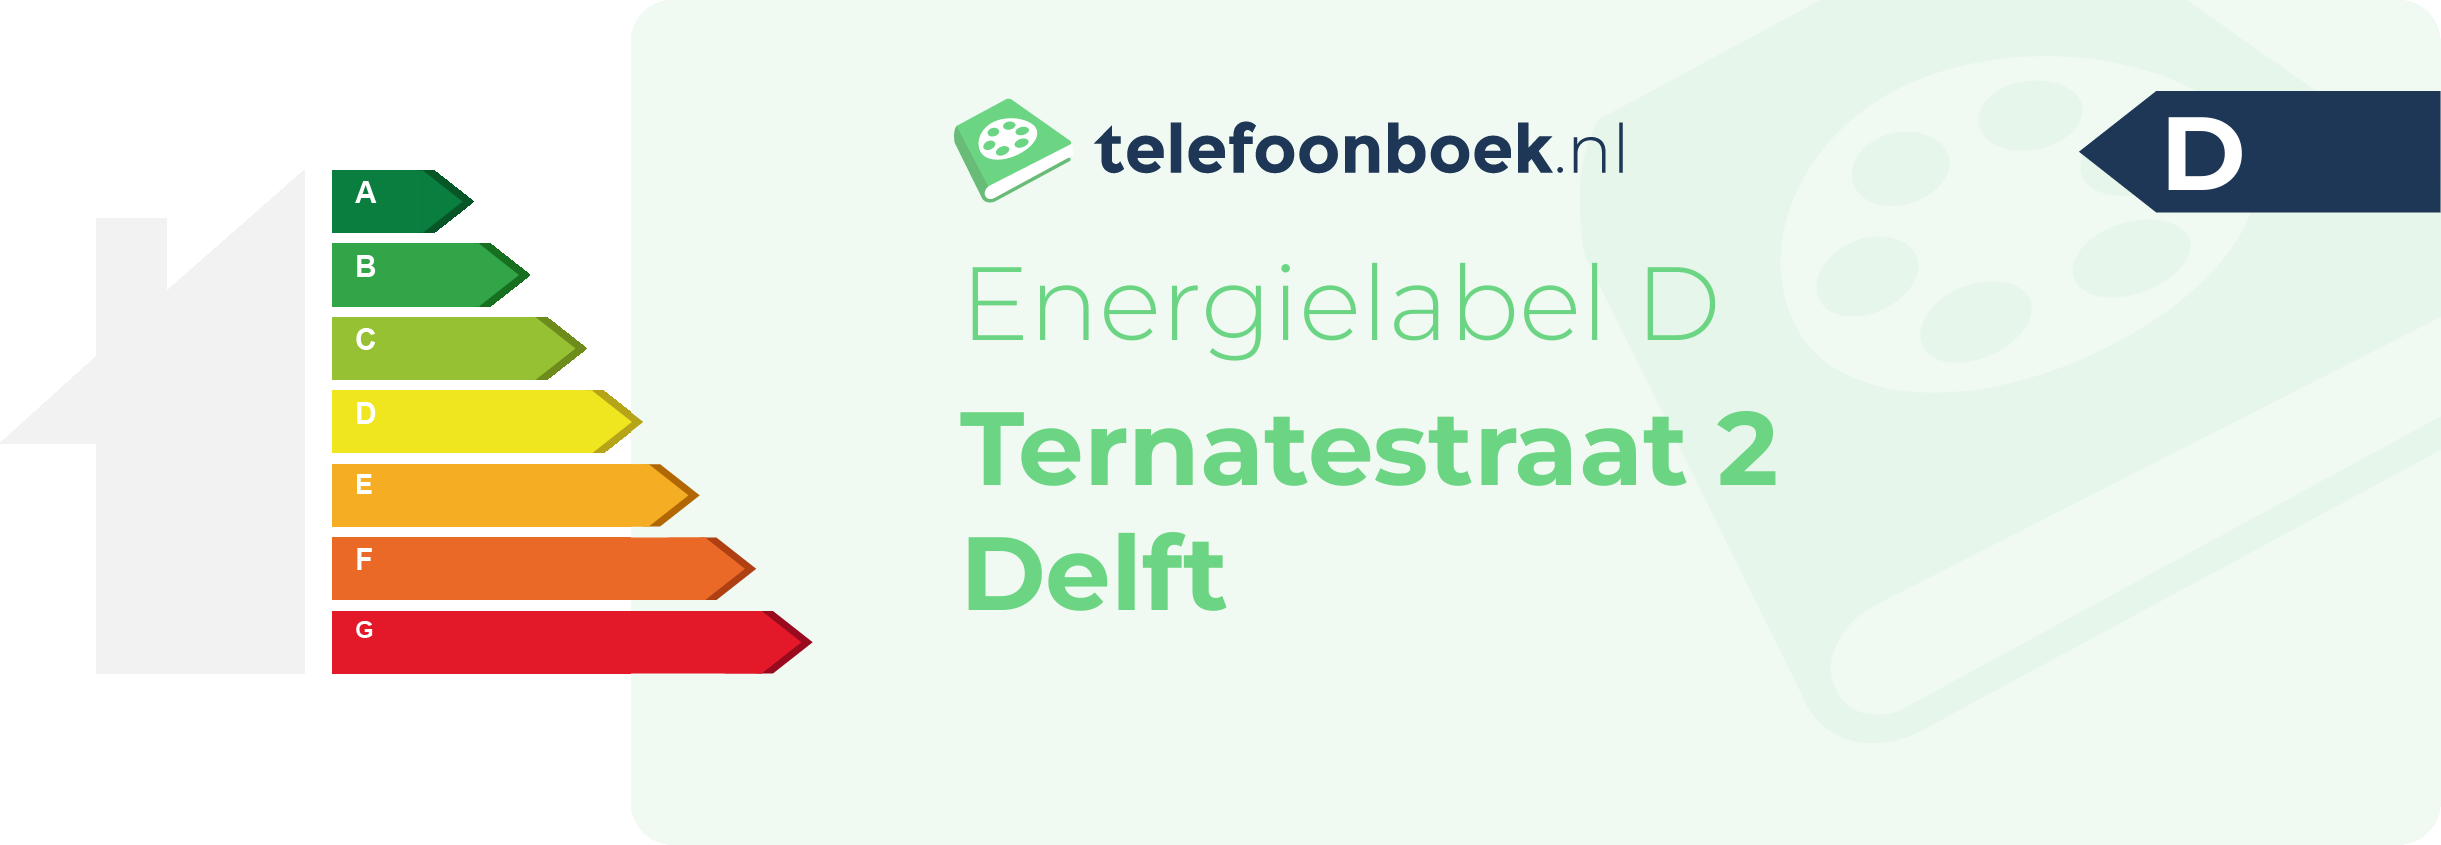 Energielabel Ternatestraat 2 Delft